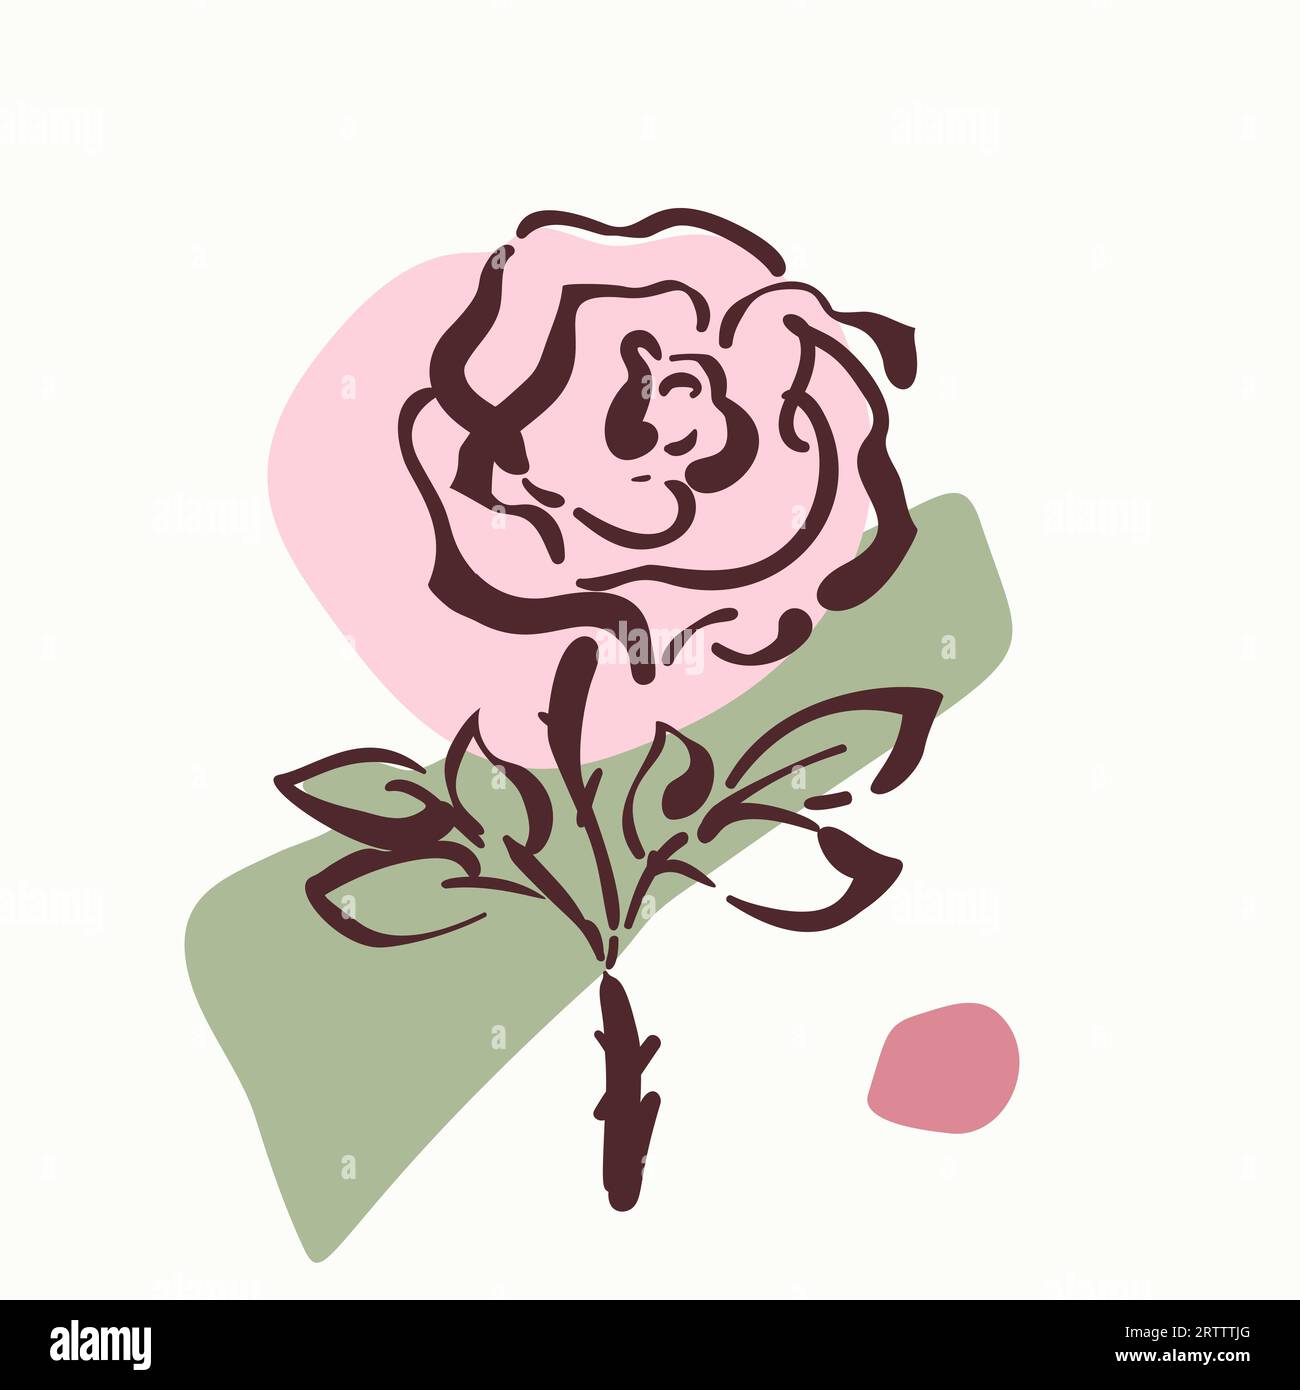 Esquisse numérique de fleur de rose sur des formes géométriques et organiques abstraites, illustration vectorielle dessinée à la main conception de carte florale noir et blanc Illustration de Vecteur